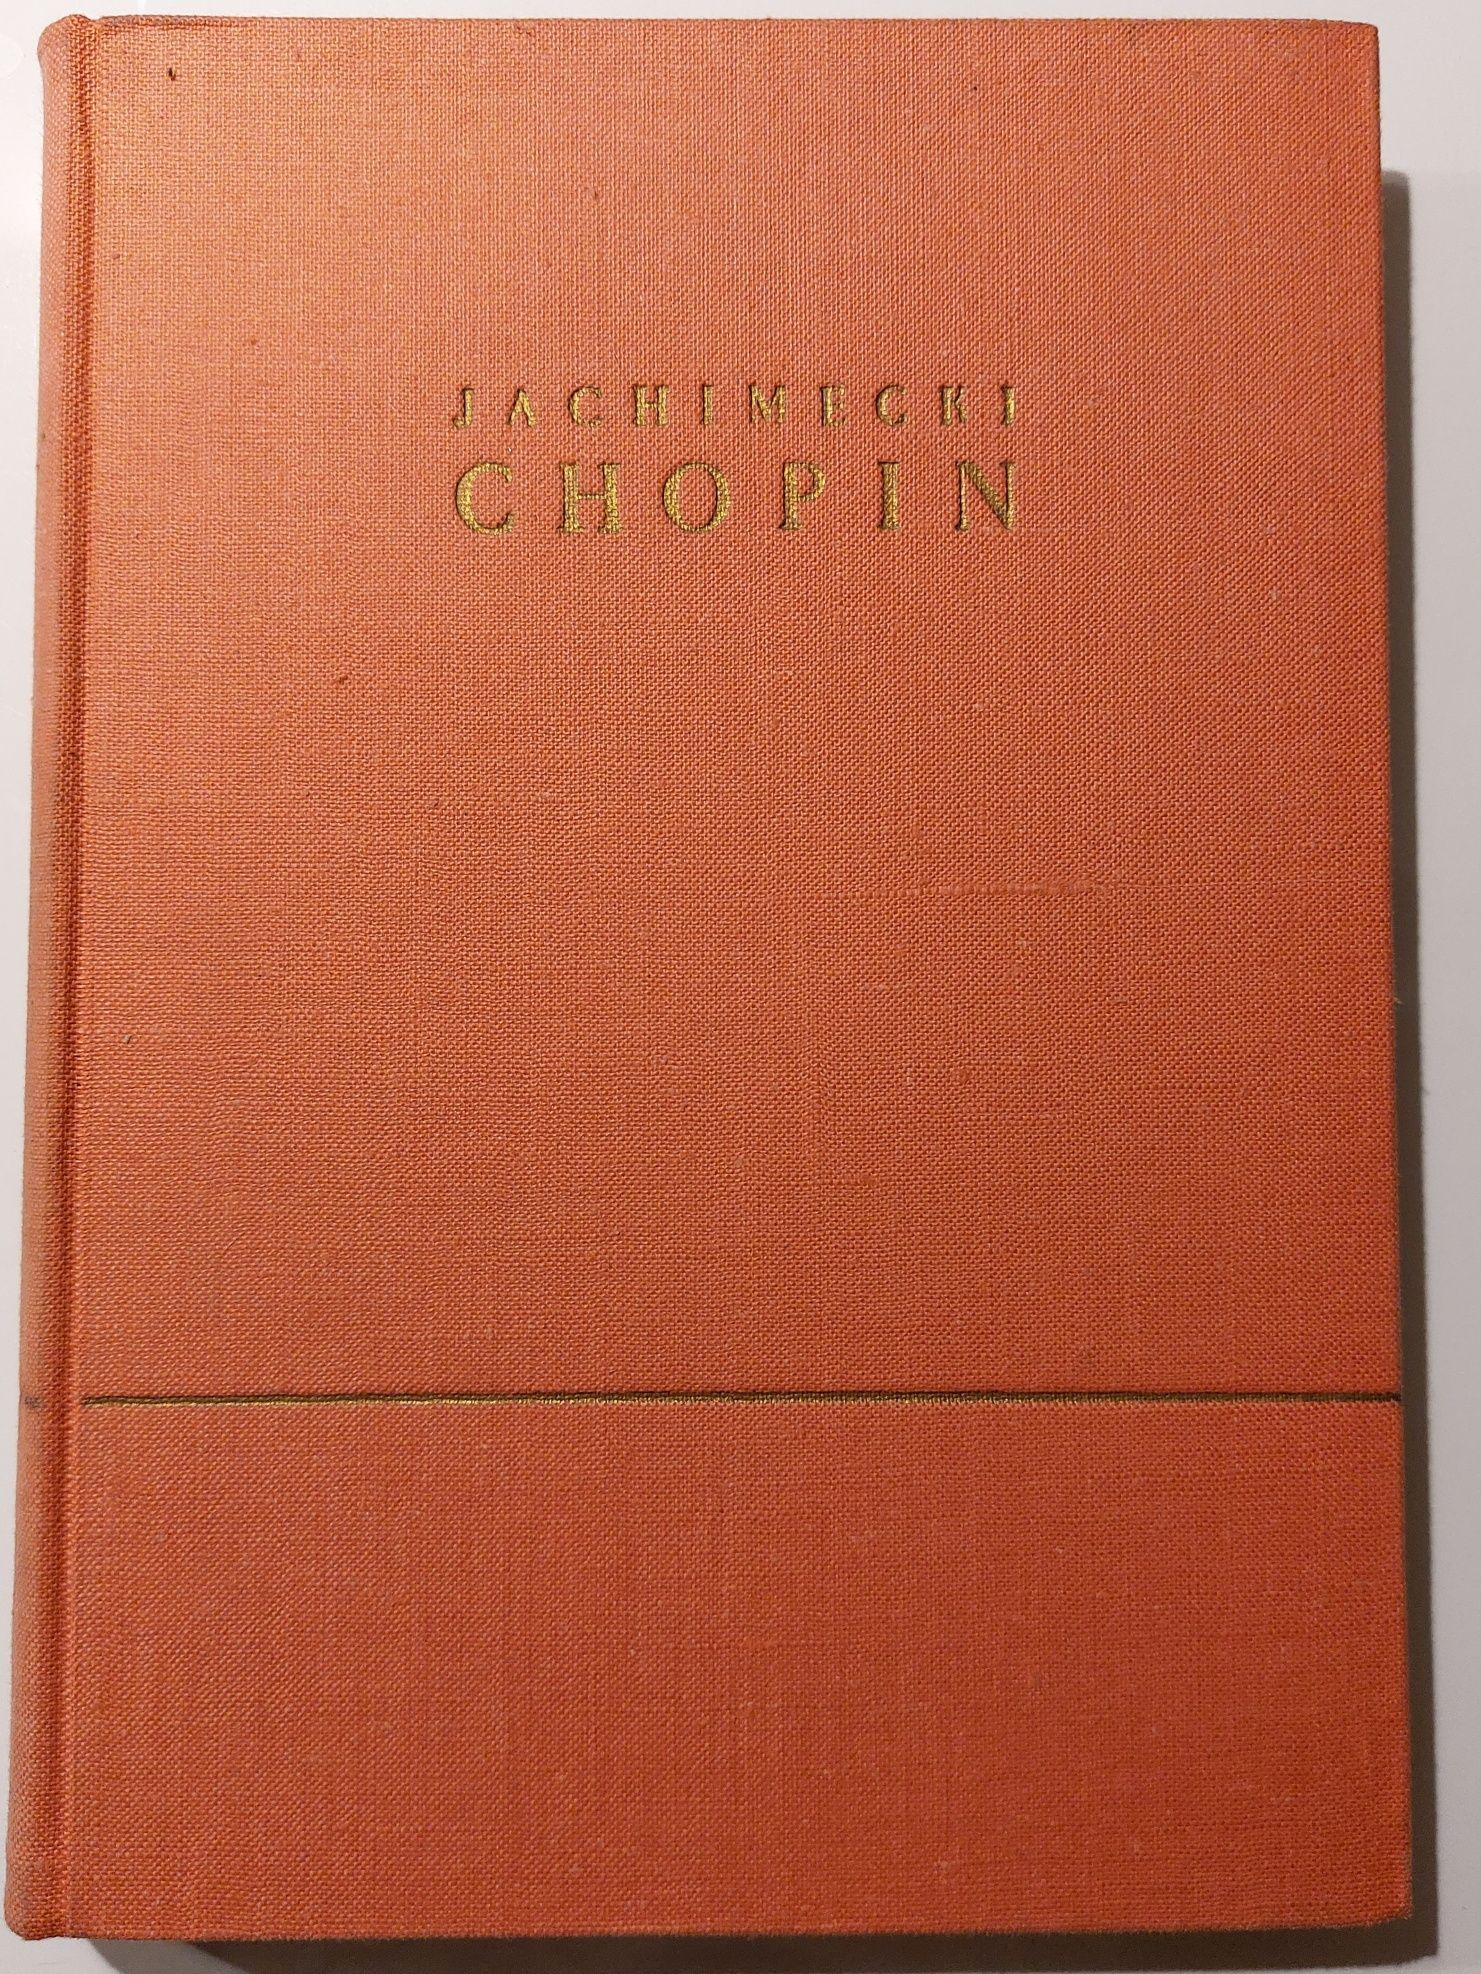 Jachimecki - Chopin. Rys życia i twórczości